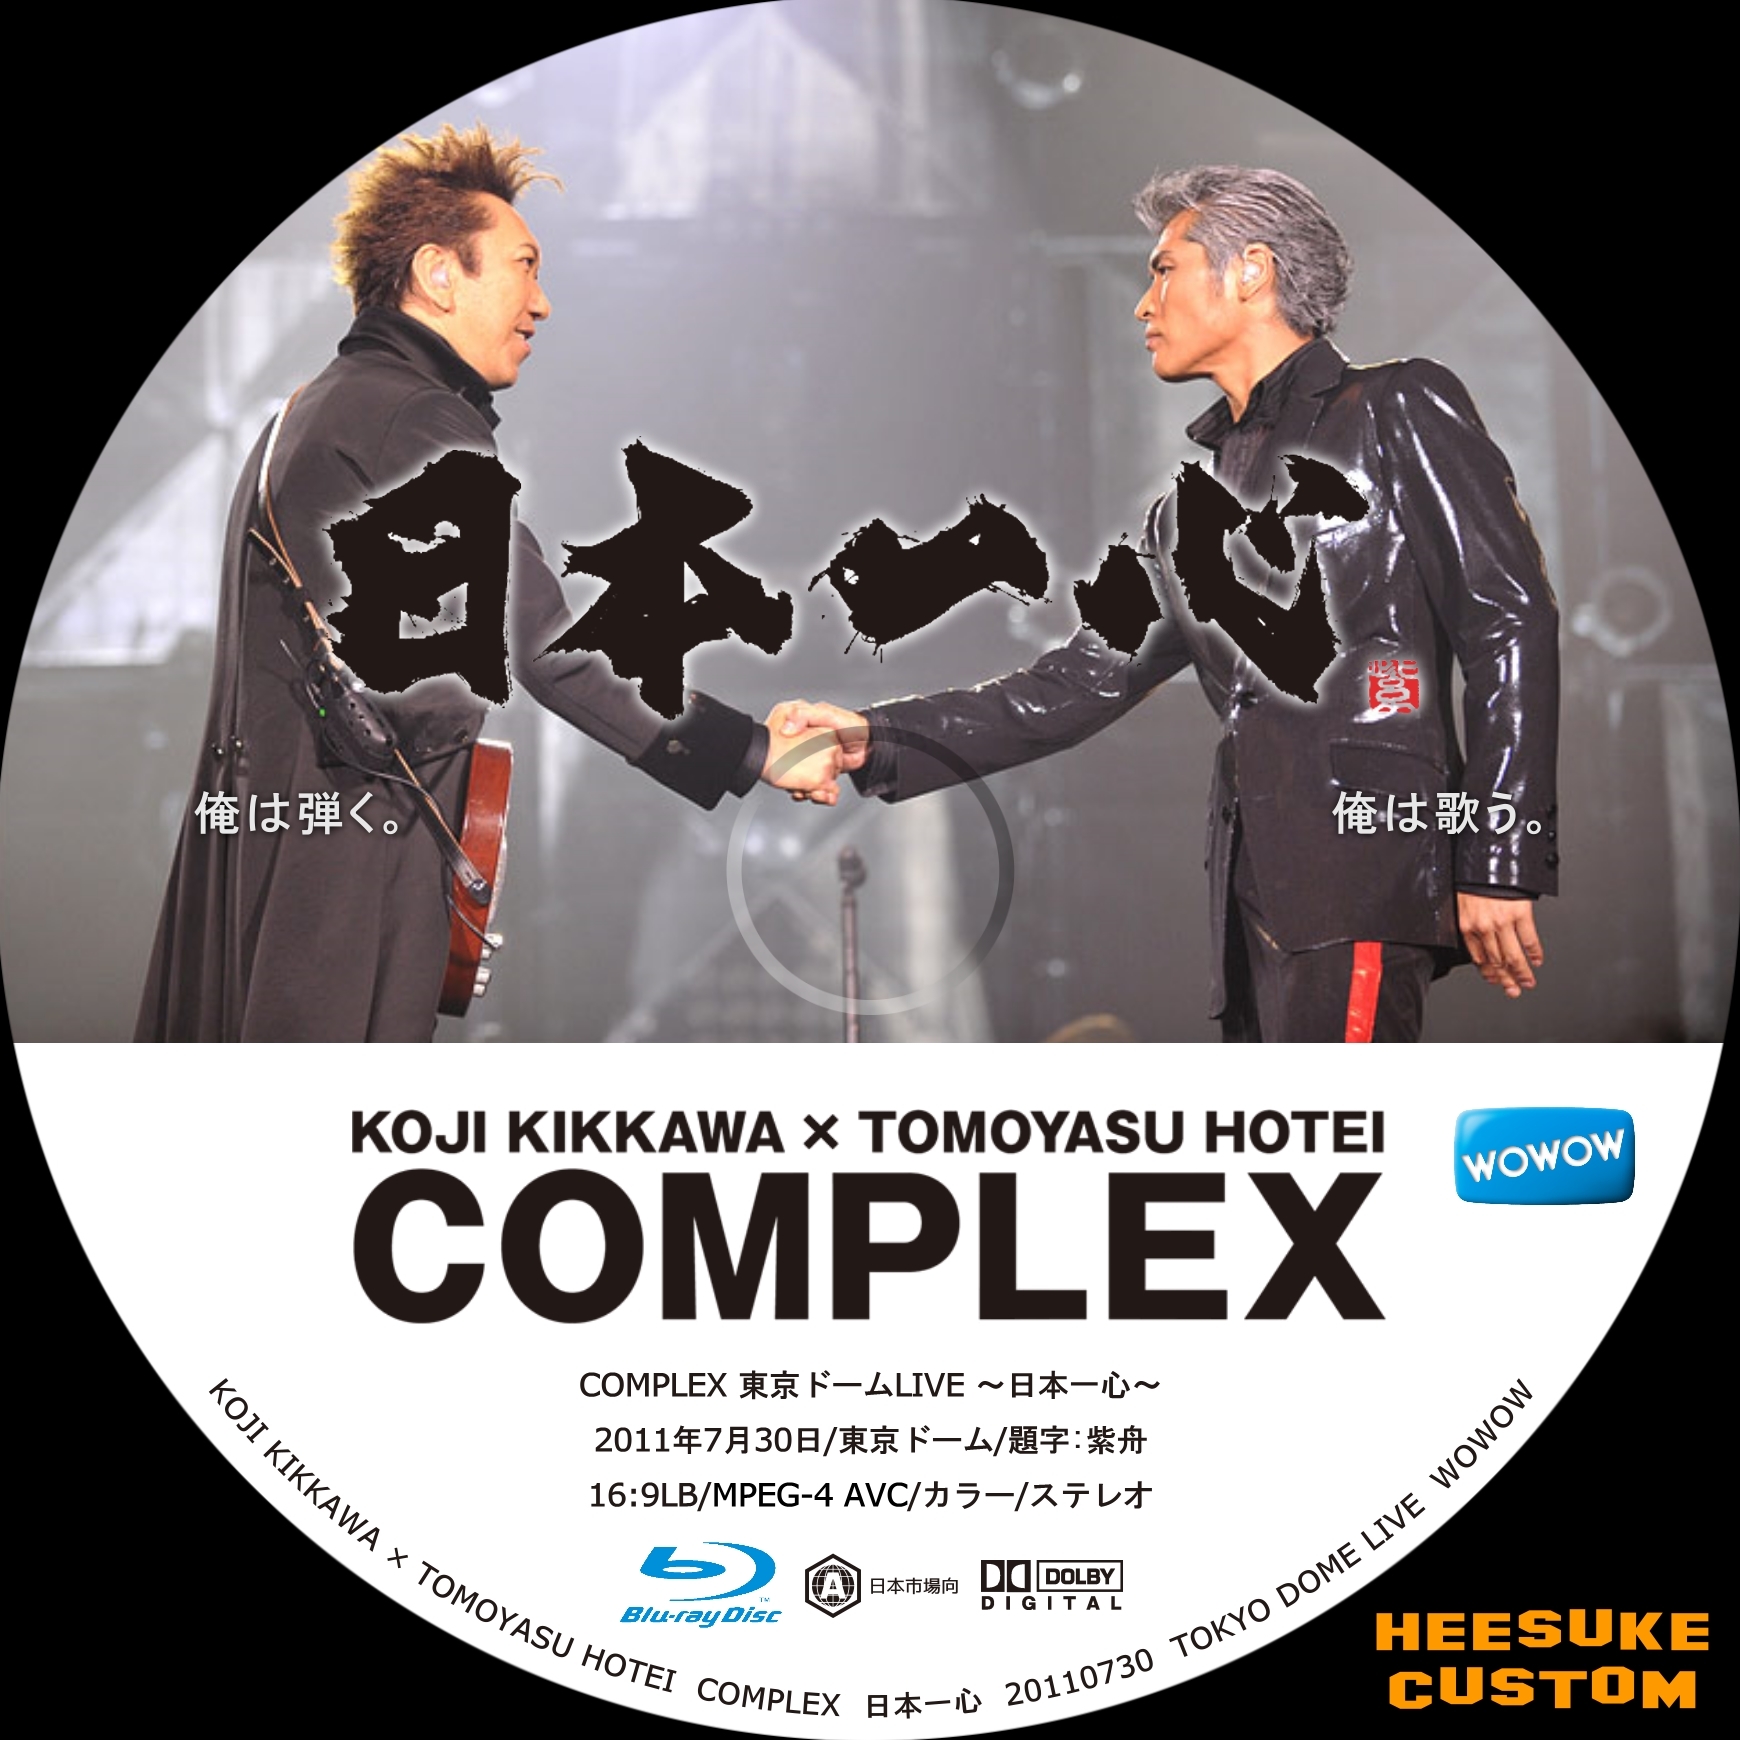 大人の上質 日本一心 COMPLEX DVD コンプレックス 20110730 東京ドーム - ミュージック - cronoslab.org